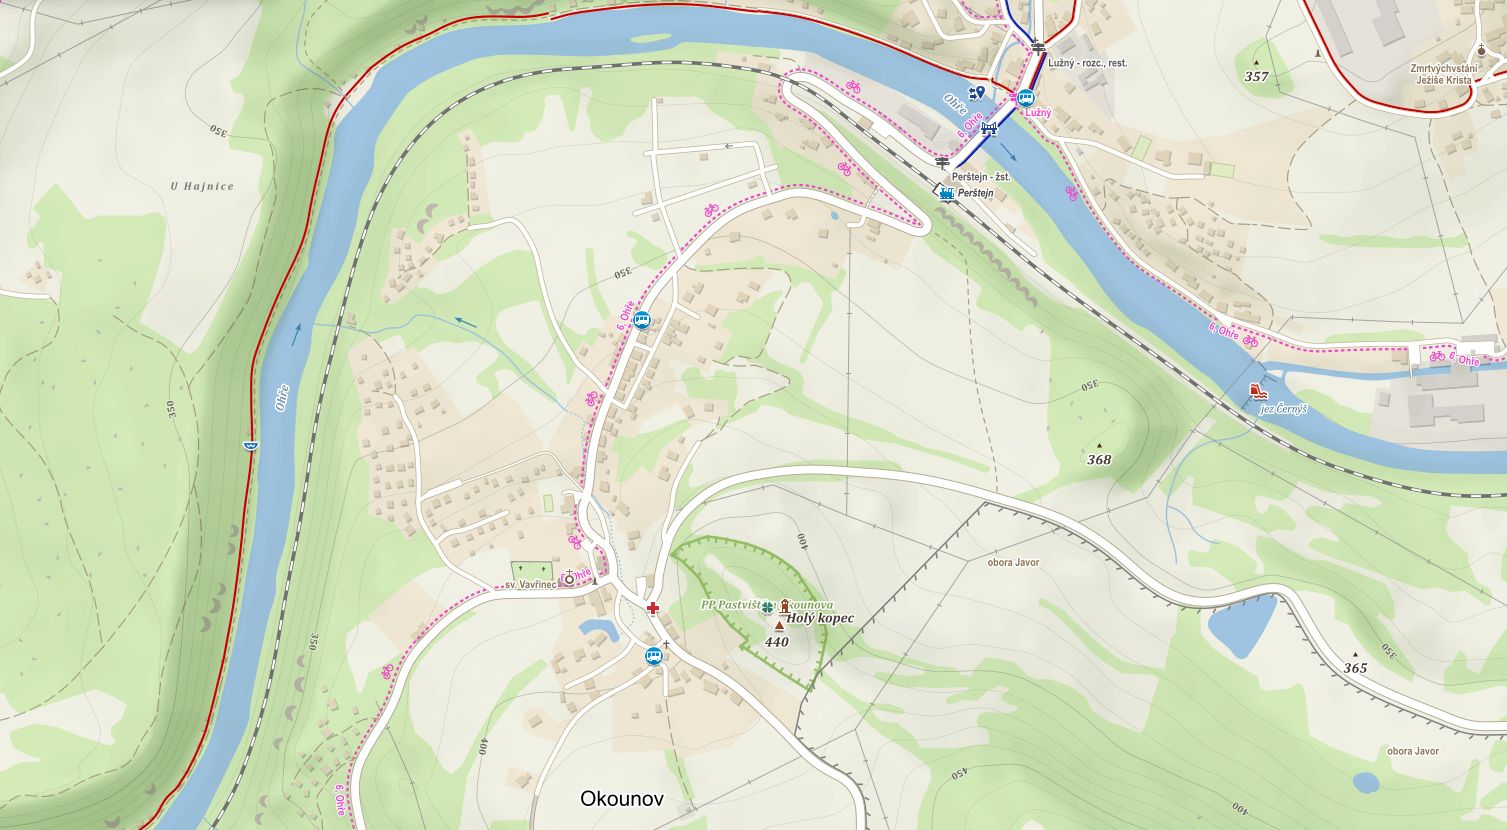 Obsah obrázku mapa, text, atlas

Popis byl vytvořen automaticky